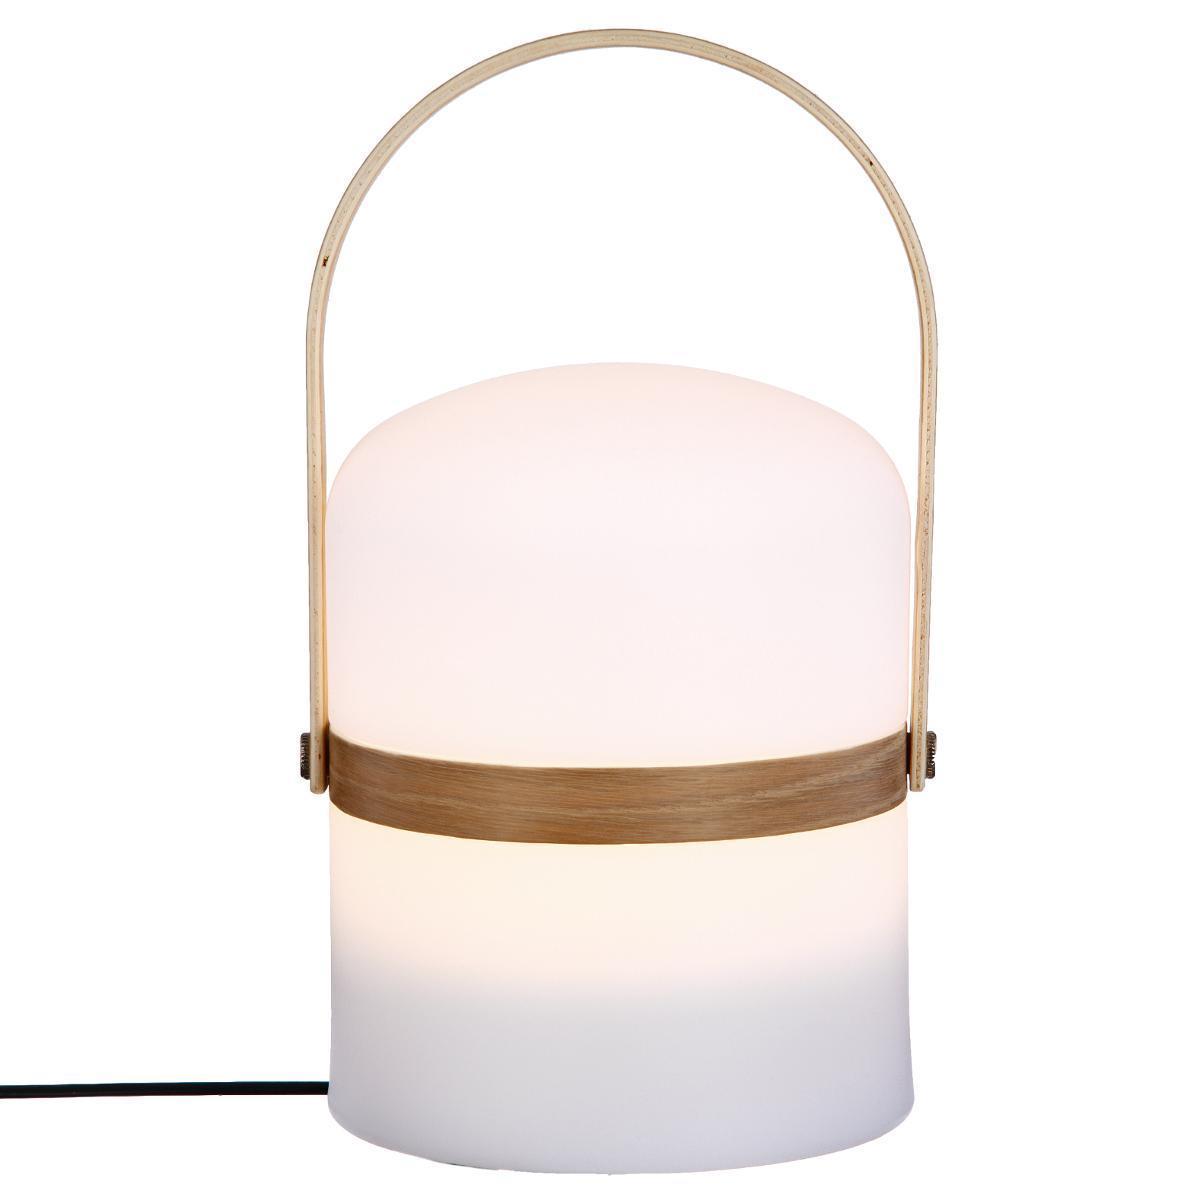 Lampe outdoor avec anse en bois - H 26.5 cm